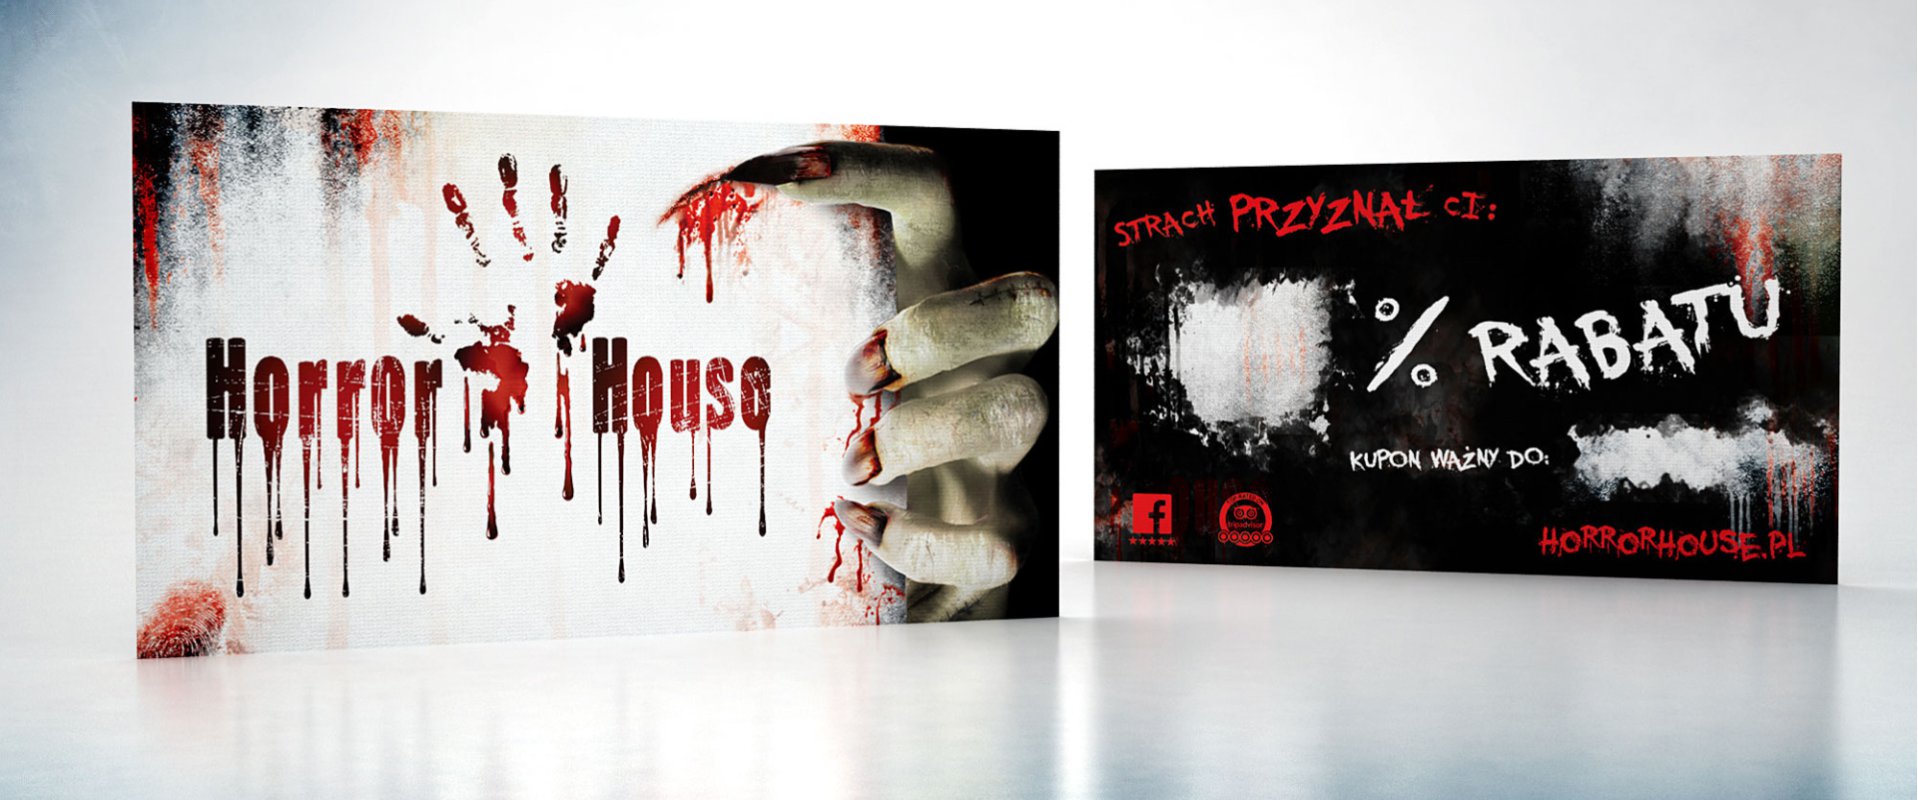 Horror House #1